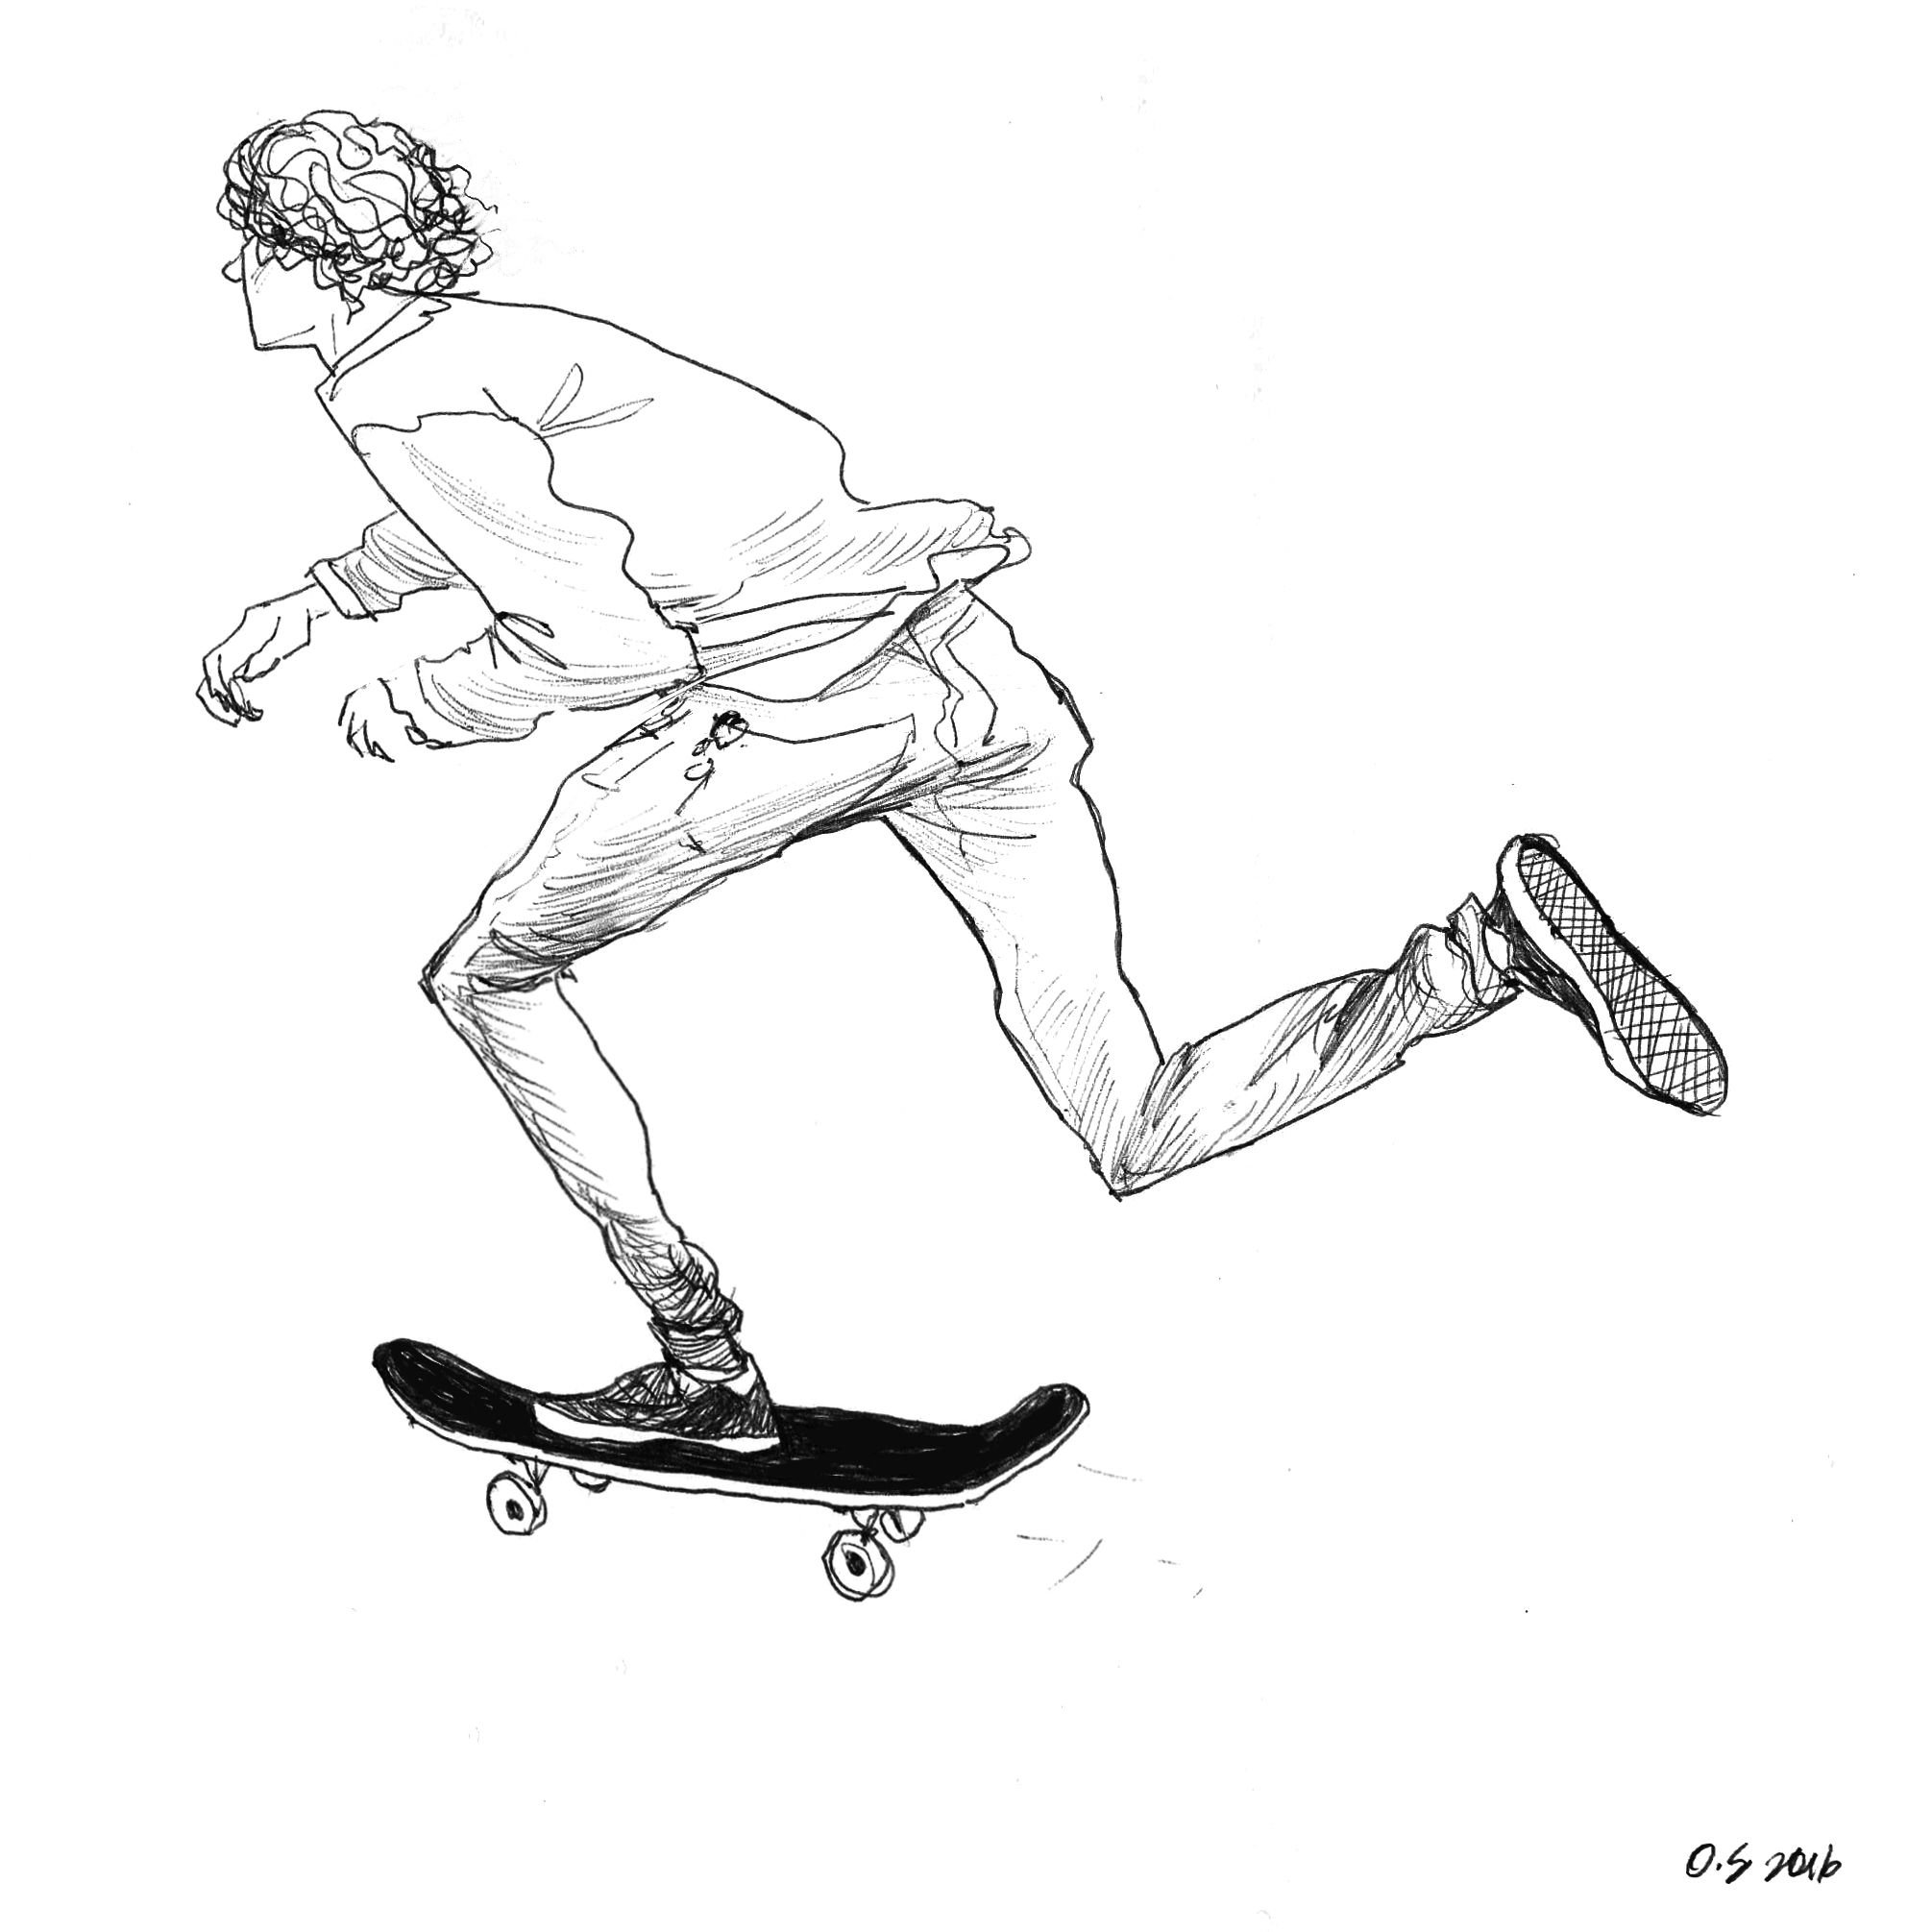 Скейтборд рисунок